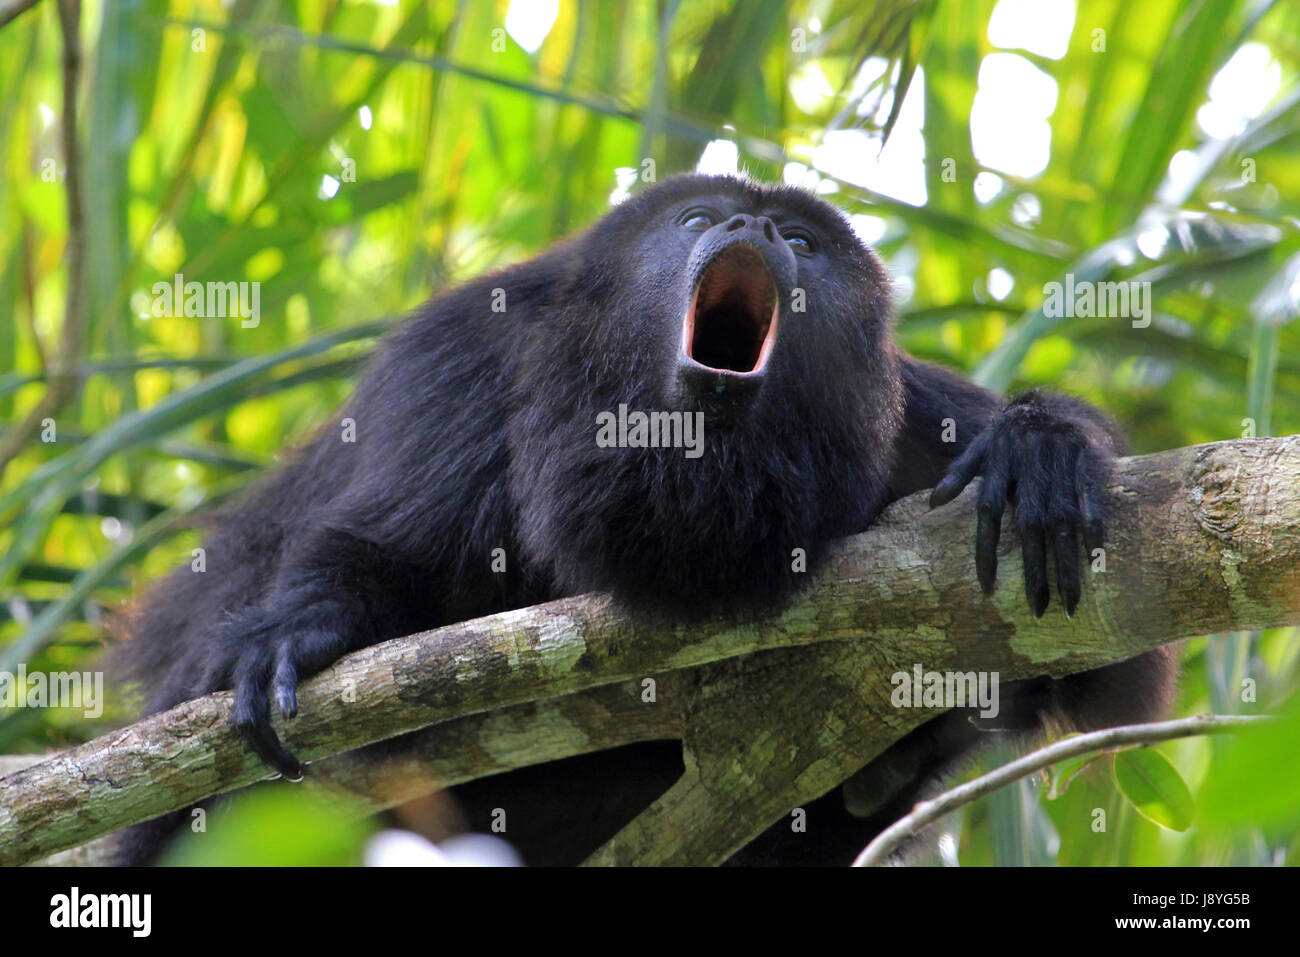 Schwarze Brüllaffen, alouatta pigra oder alouatta caraya, sitzt auf einem Baum in Belize Dschungel und Geheult wie verrückt. Auch in Mexiko und Guatemala gefunden. Stockfoto